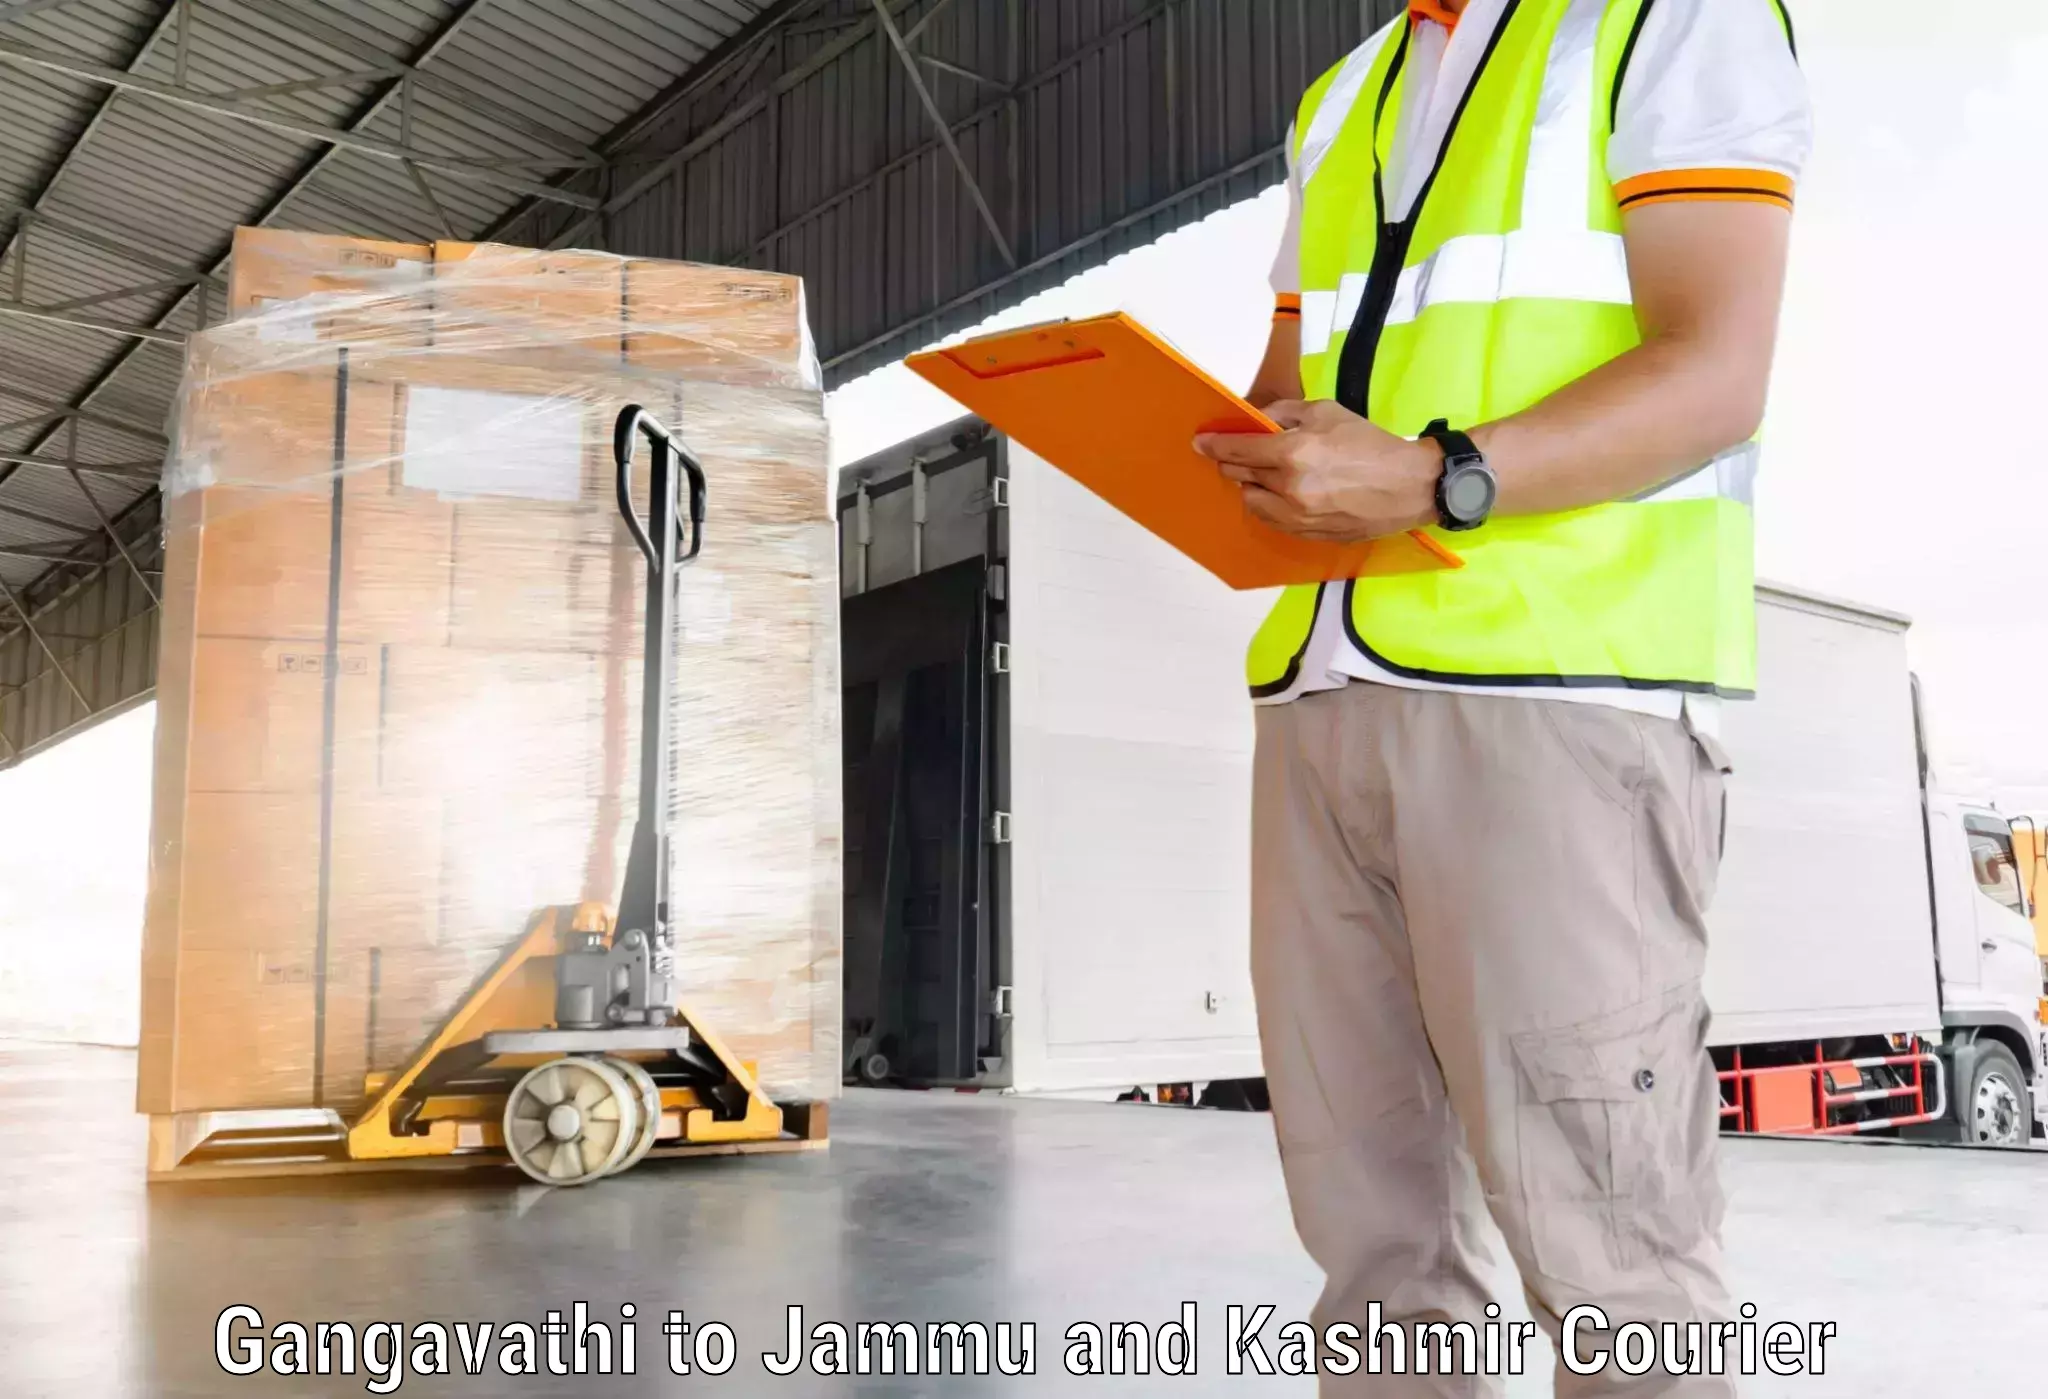 Advanced package delivery Gangavathi to IIT Jammu